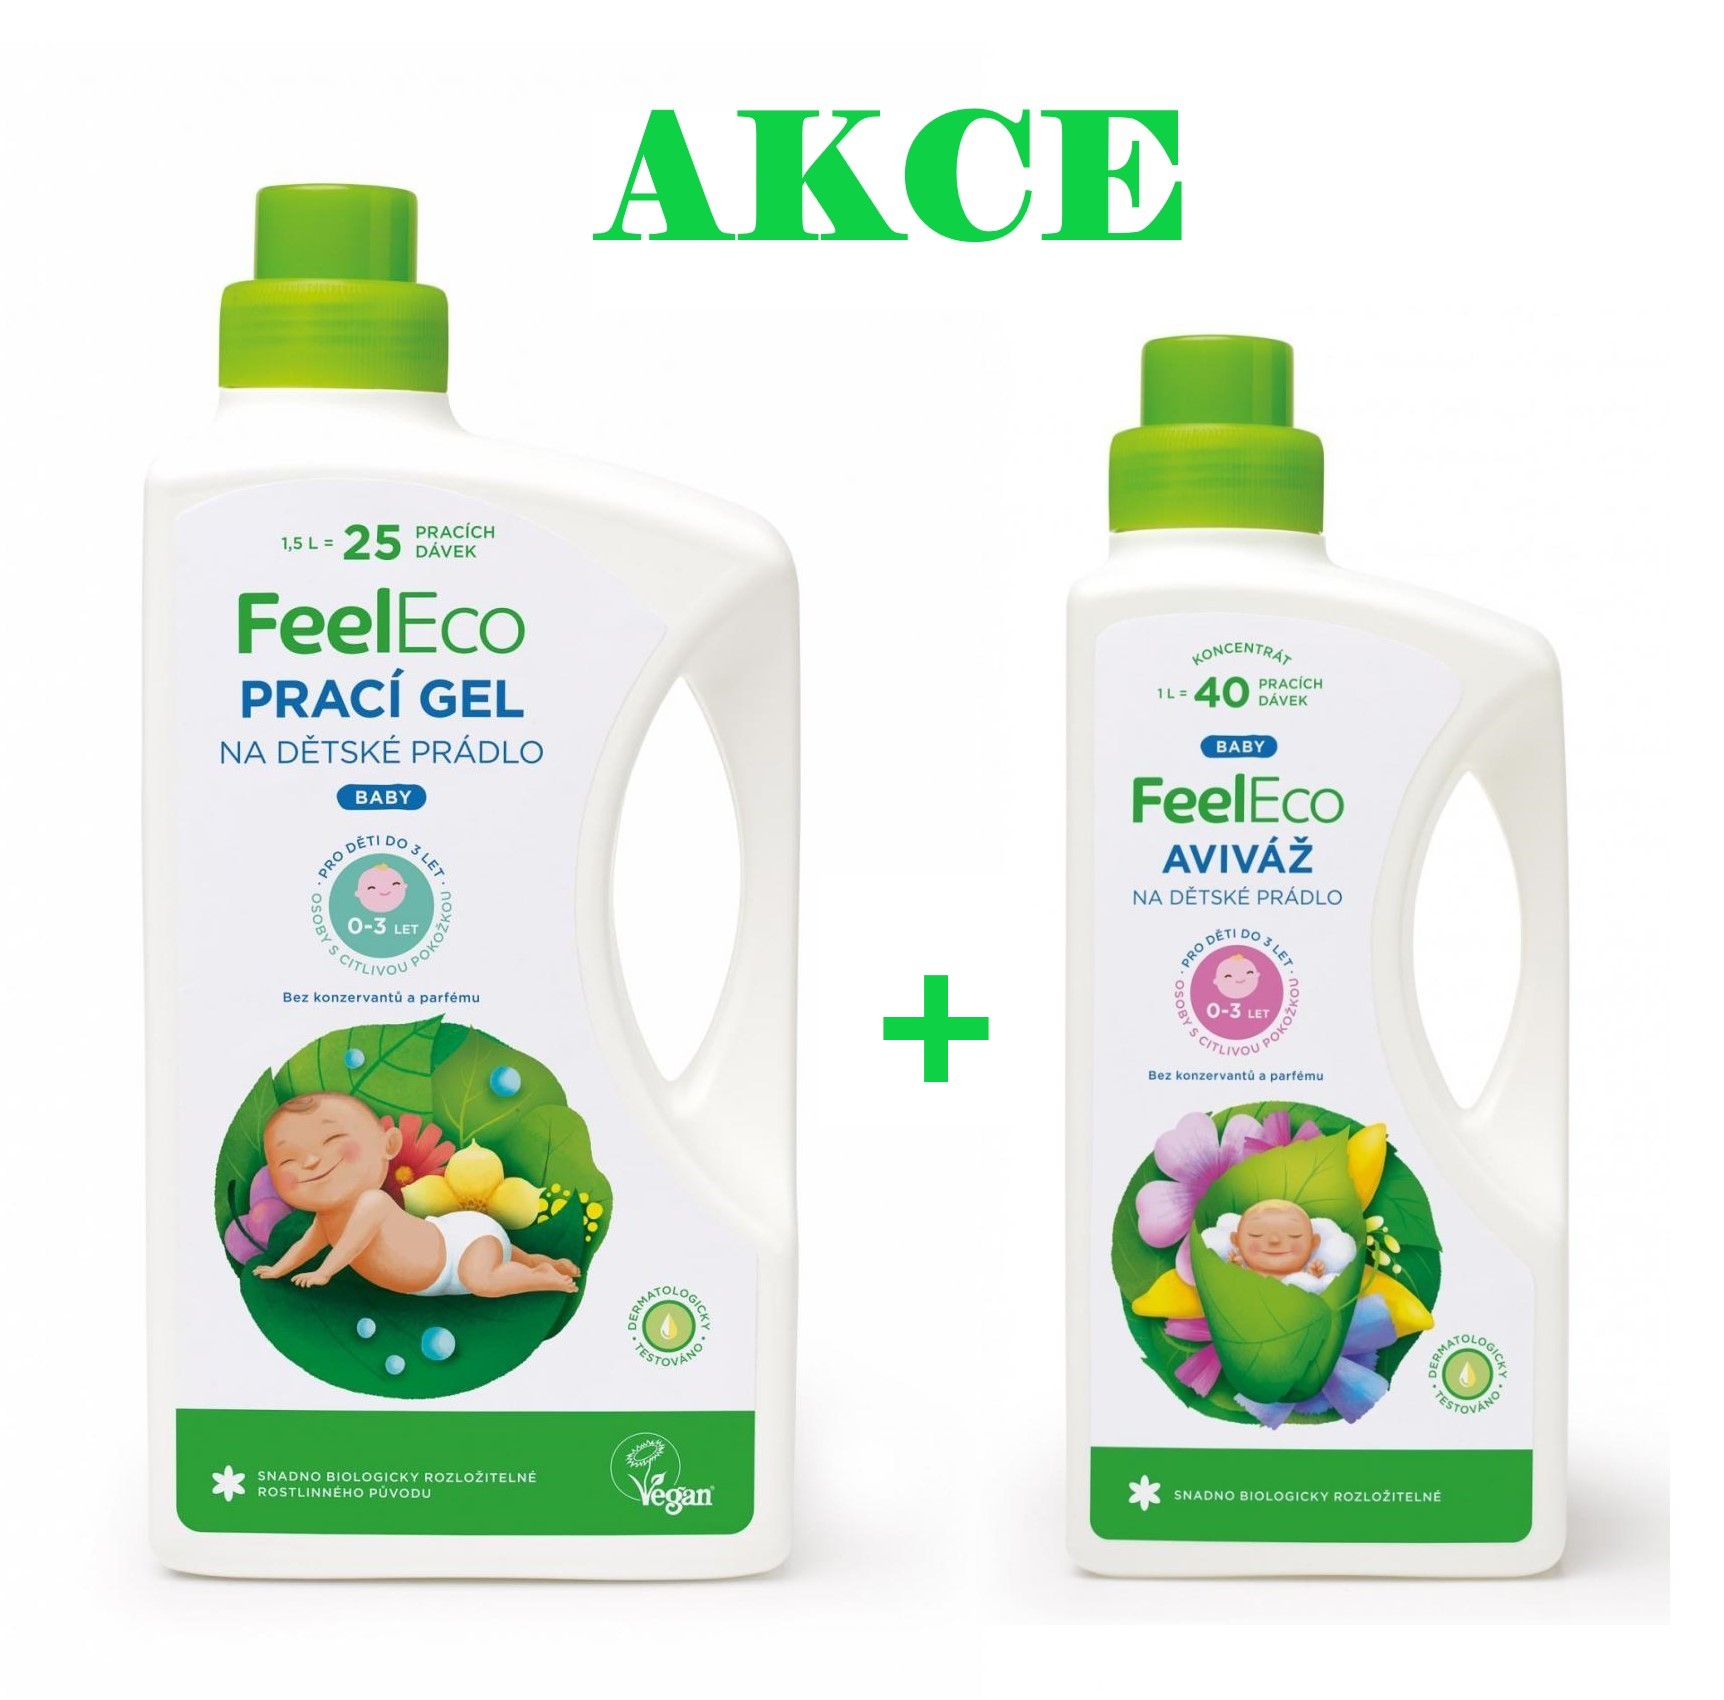 AKCE Feel Eco BABY - dětský prací gel 1,5l + dětská aviváž 1l zdarma